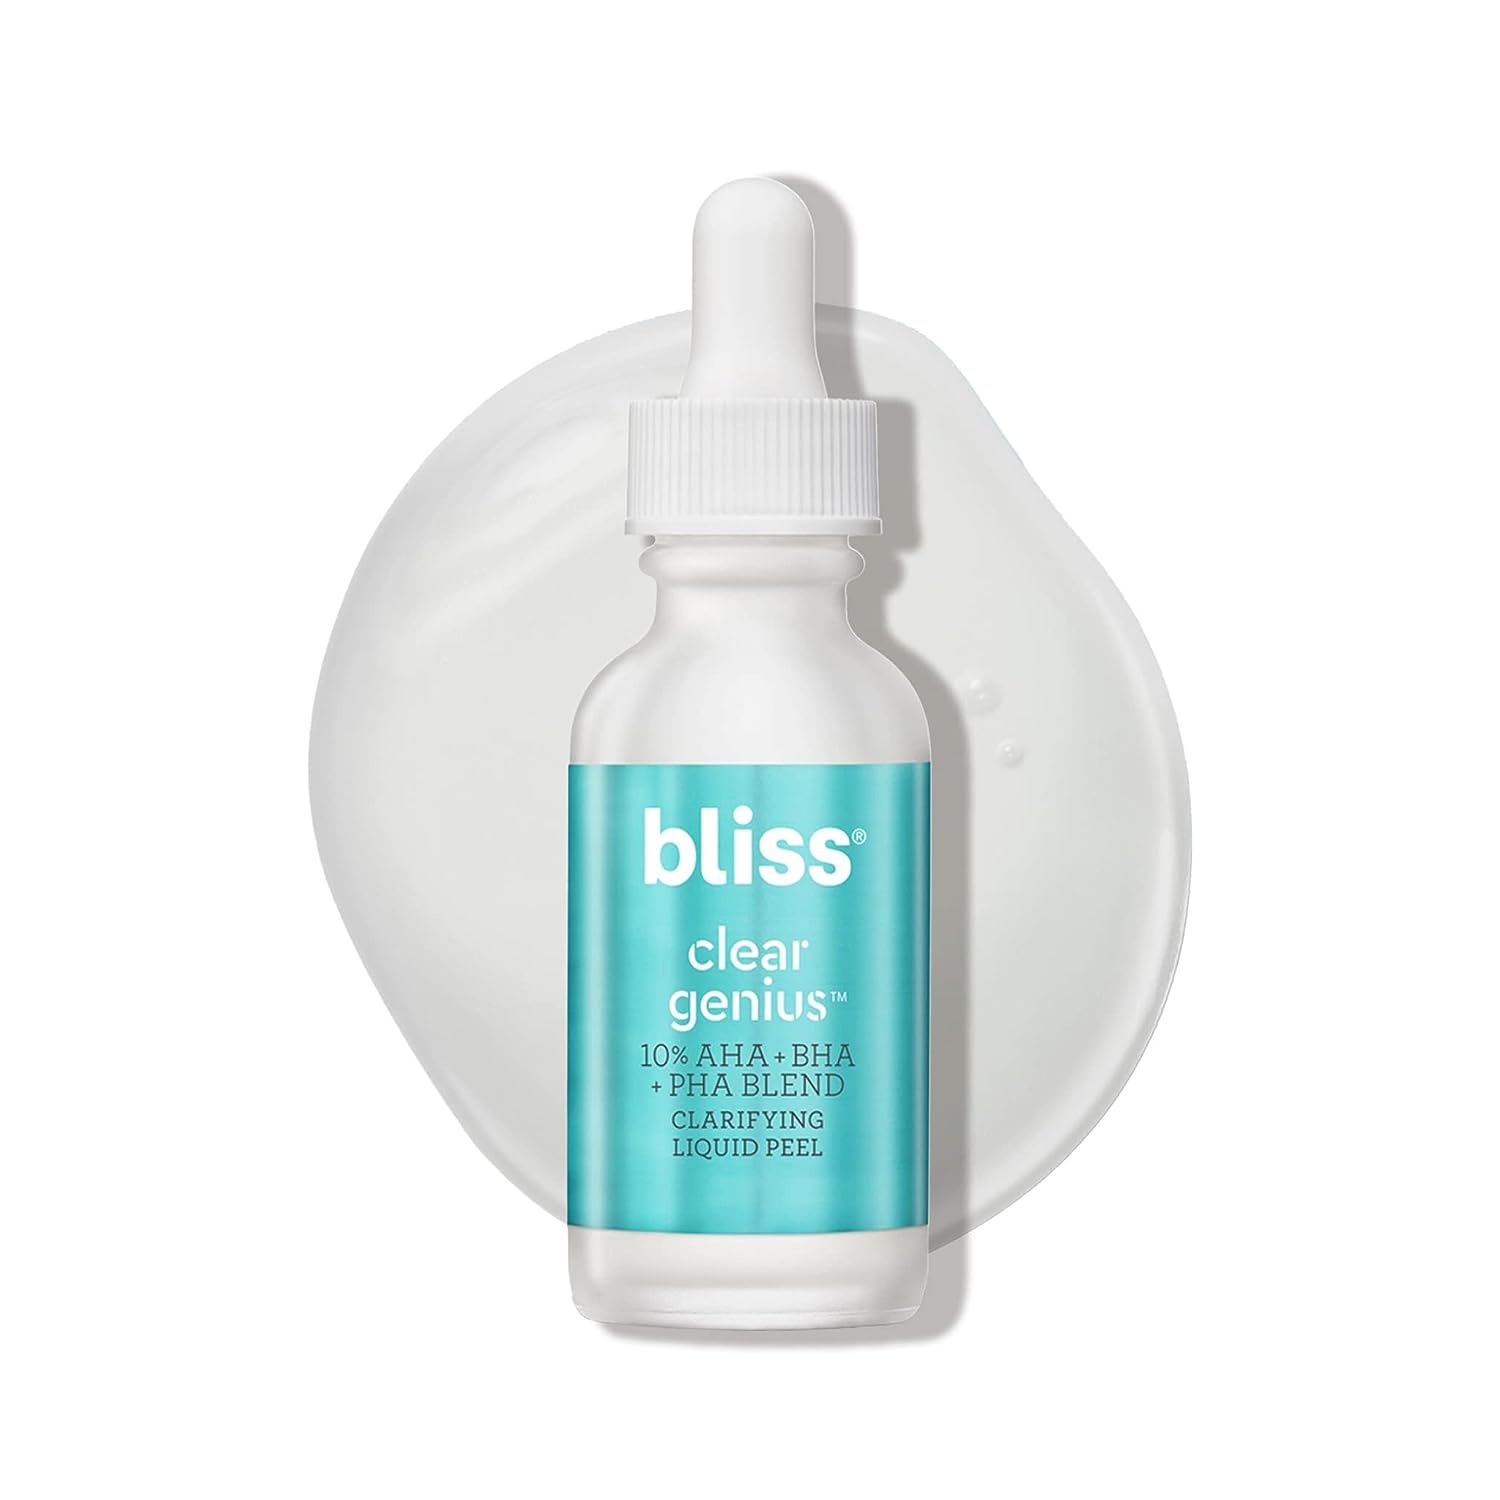 Bliss Clear Genius Clarifying Overnight Liquid Peel - 1   - Clear Pores & Exfoliate Skin - Non-Irritating - Clean - Vegan & Cruelty-Free